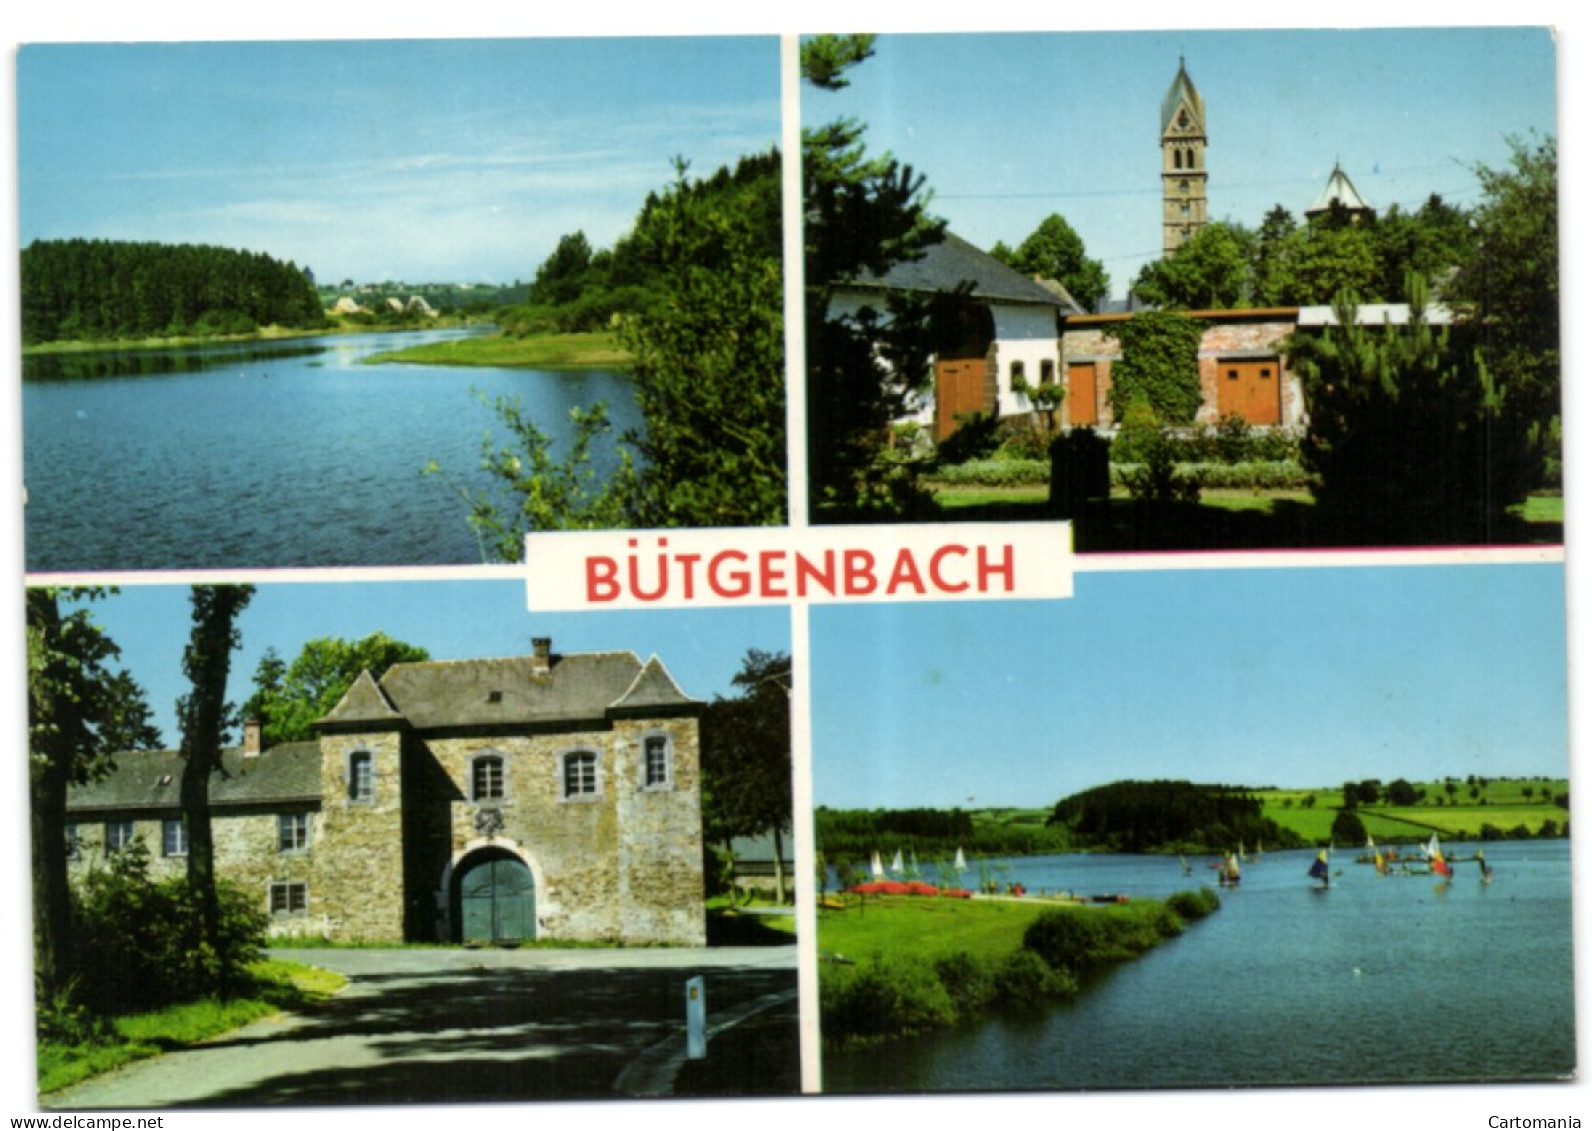 Bütgenbach - Bütgenbach